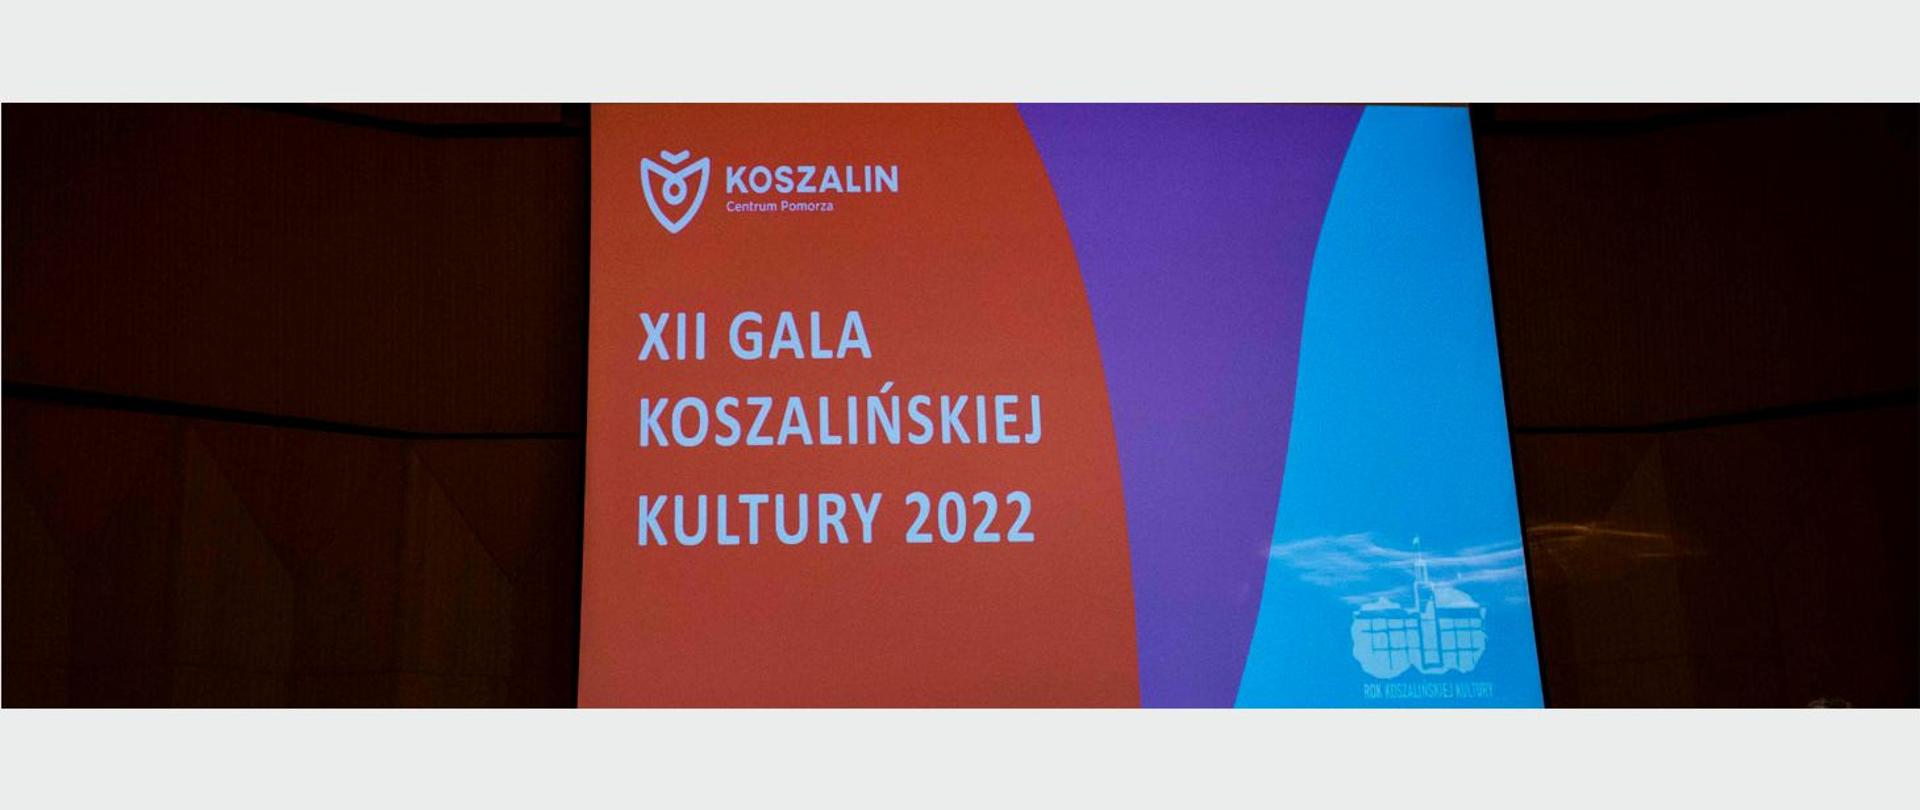 Zdjęcie banneru z napisem XII Gala Koszalińskiej Kultury 2022